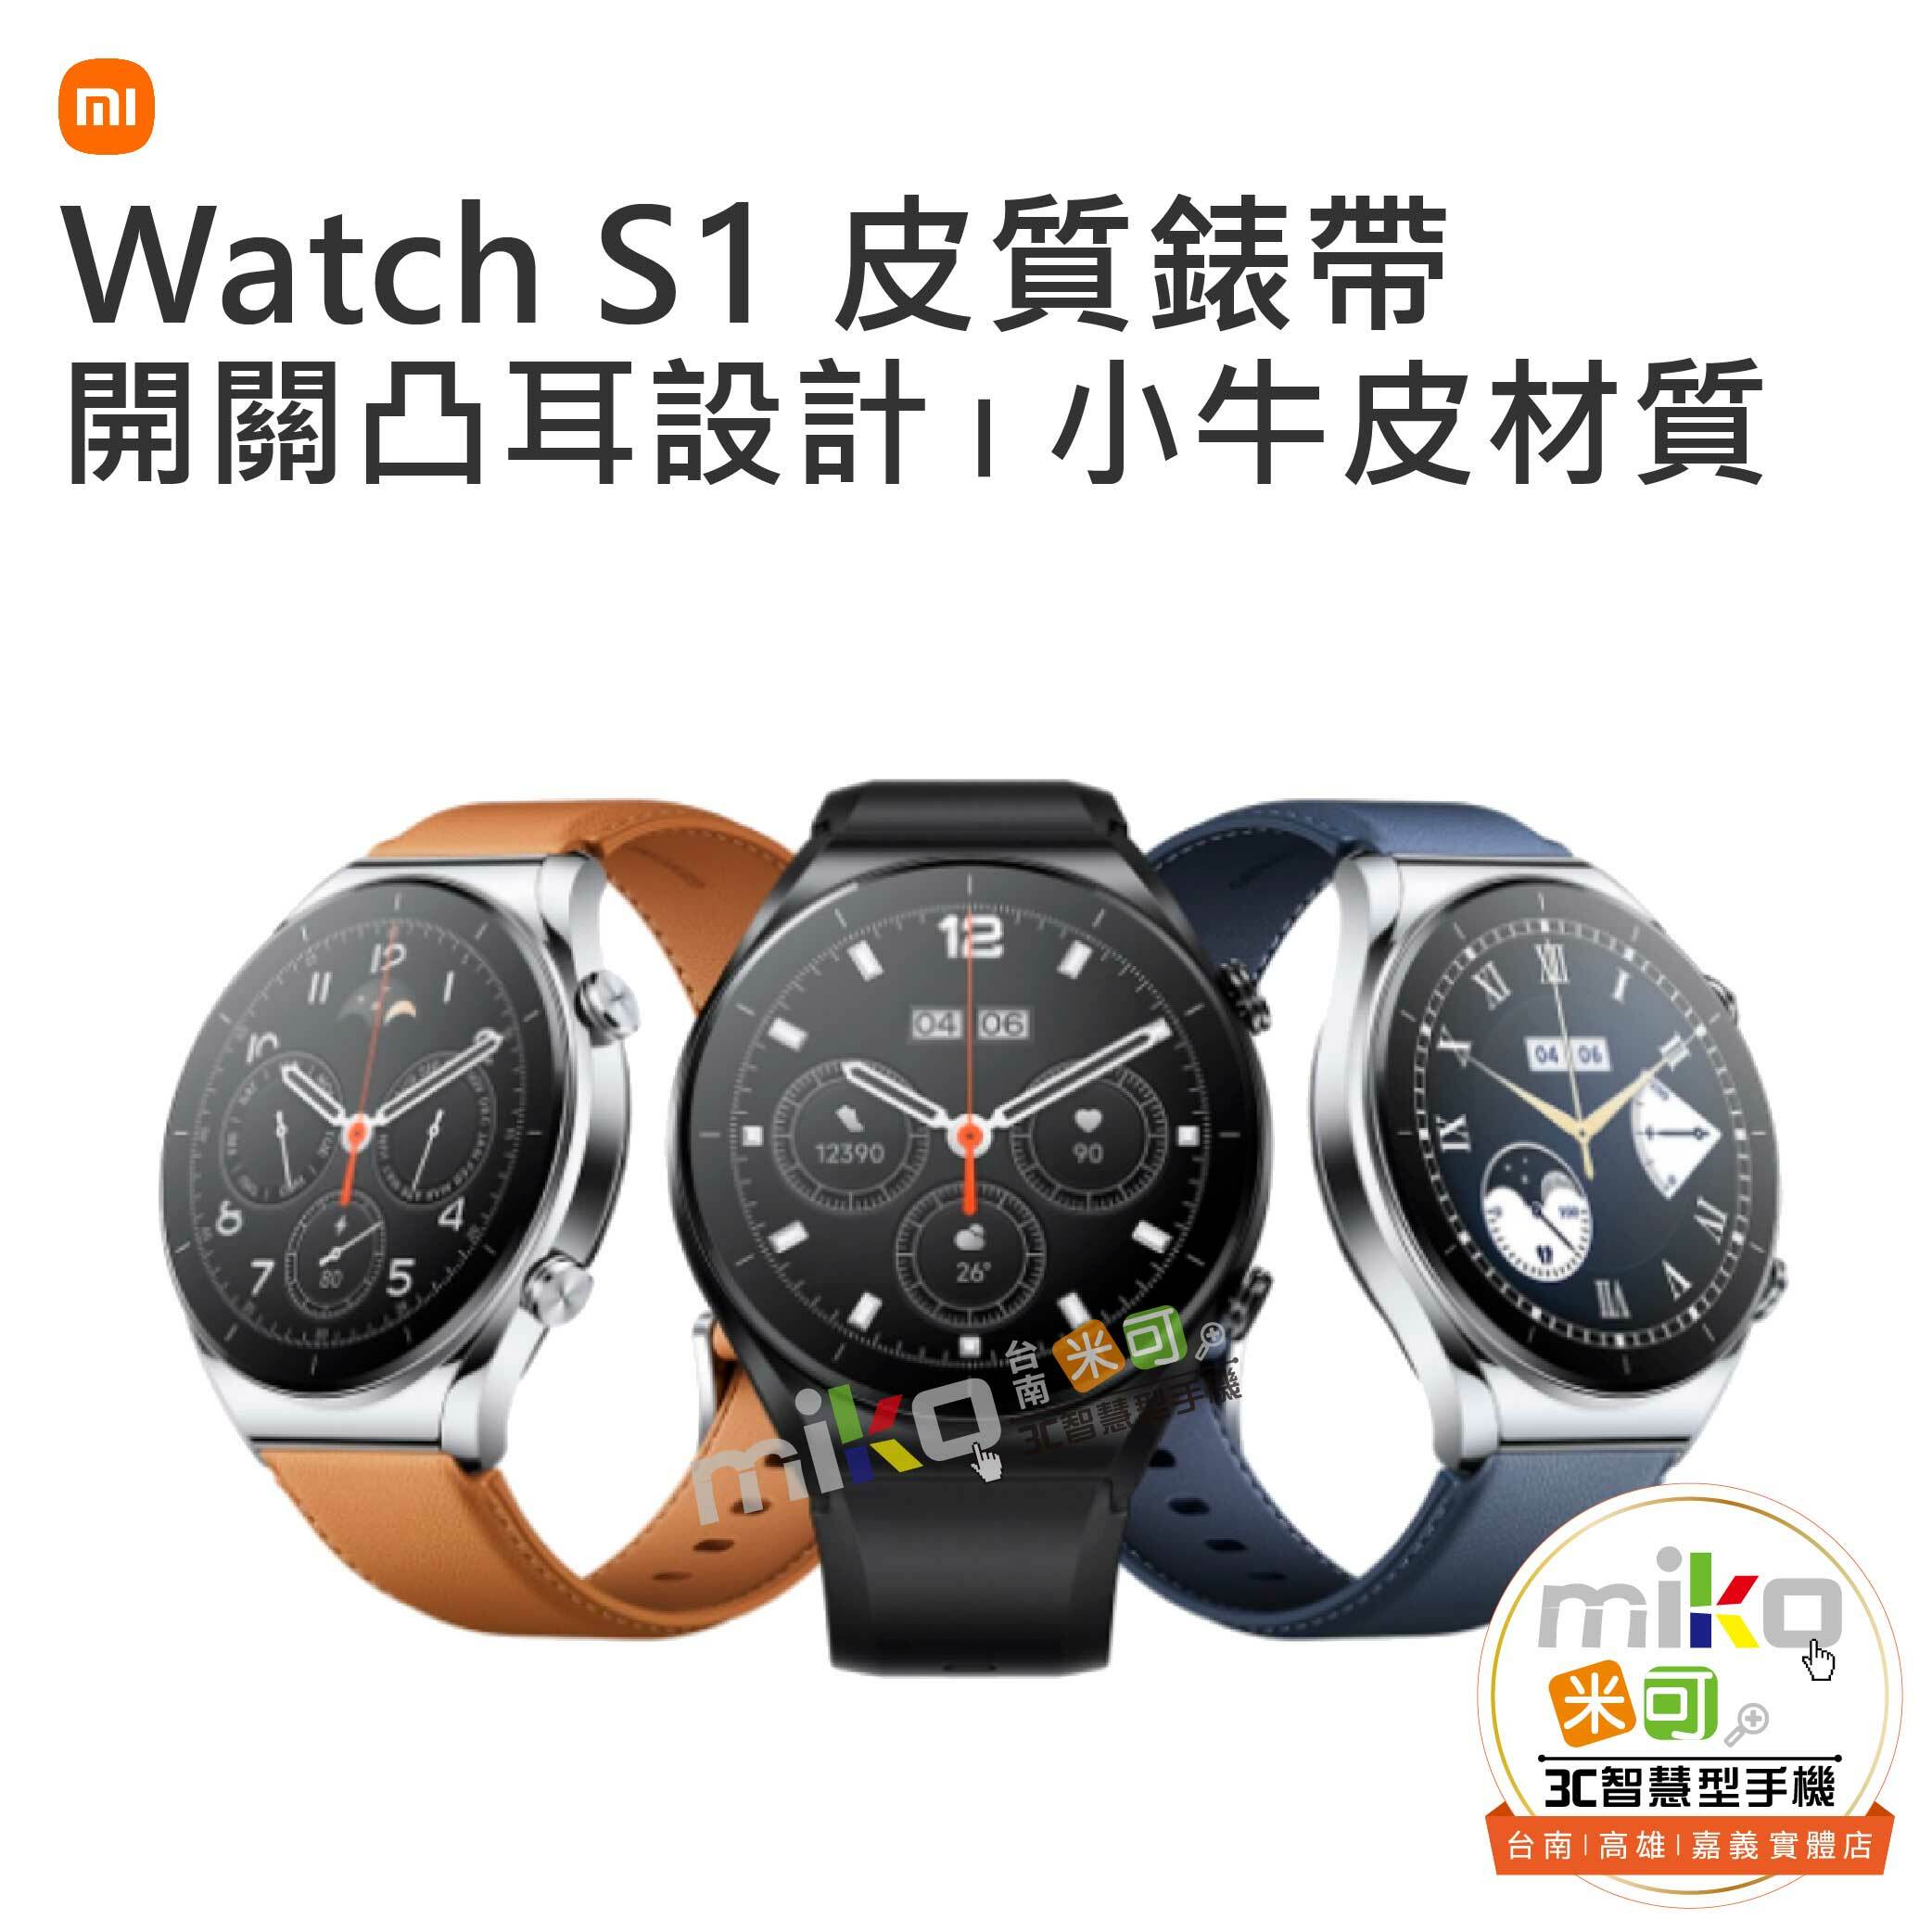 小米MI 小米Watch S1 皮質錶帶- 台南/高雄/嘉義- MIKO米可手機館最優惠